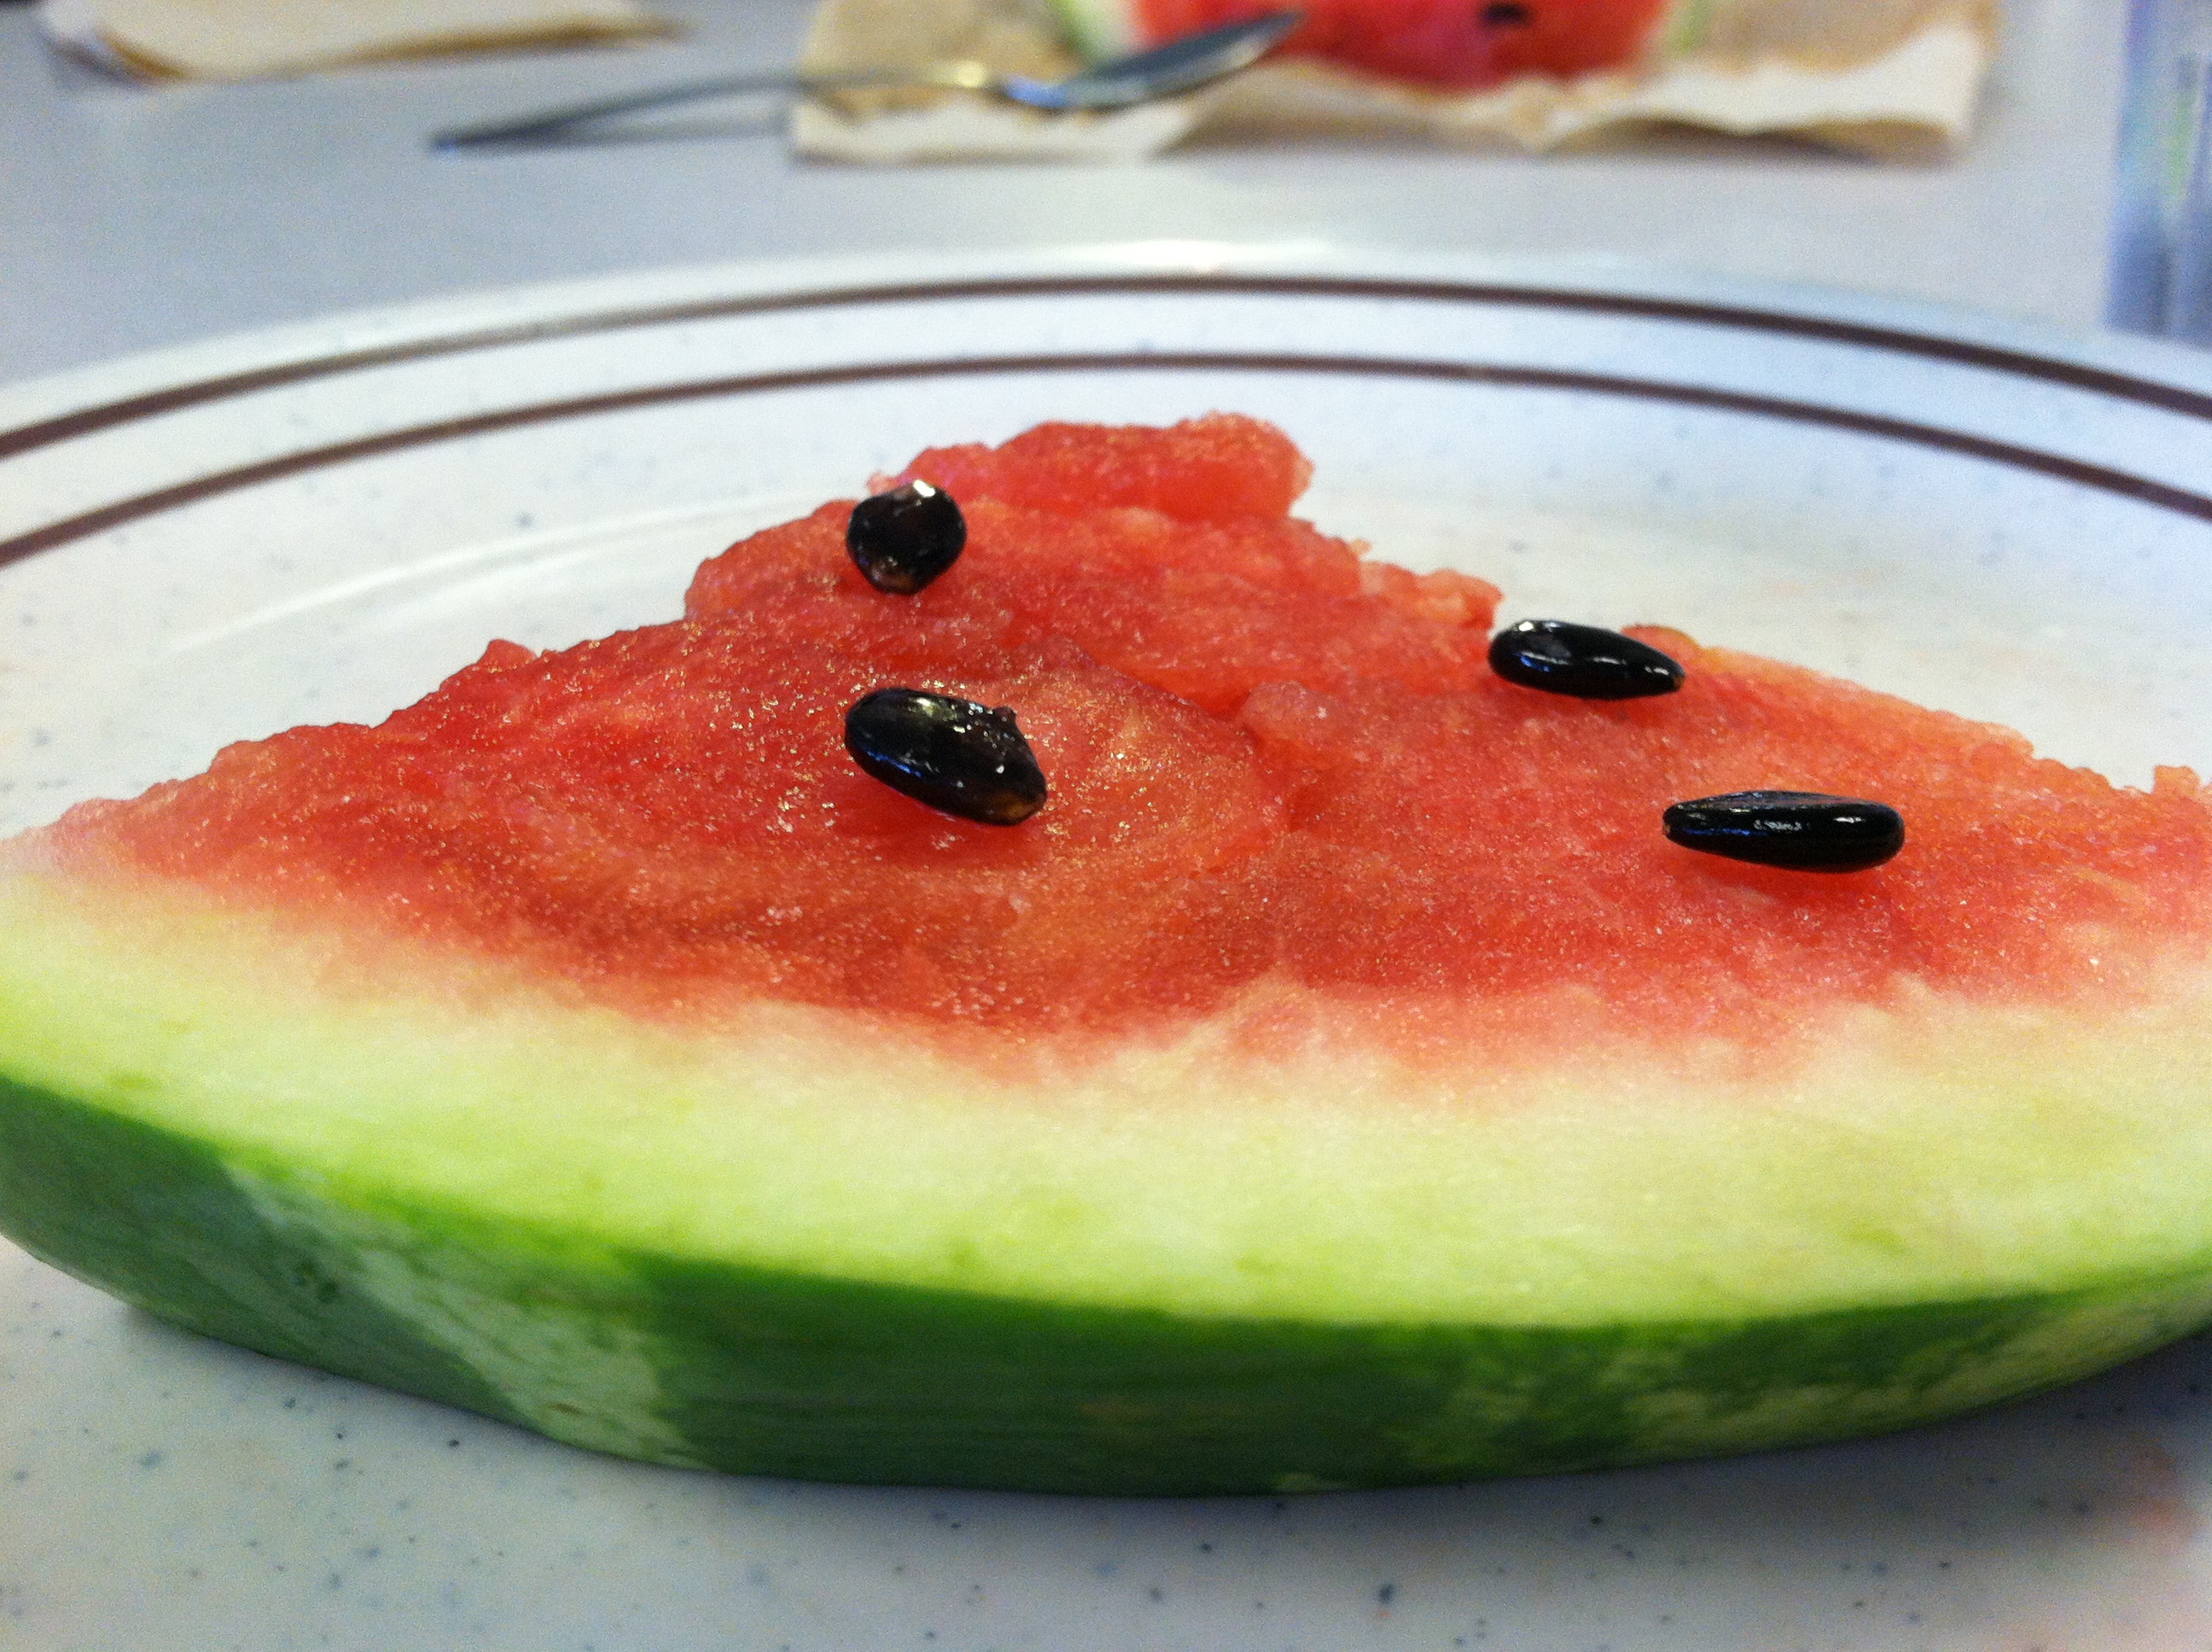 Piece of watermelon, photo taken by Johanna Fischer